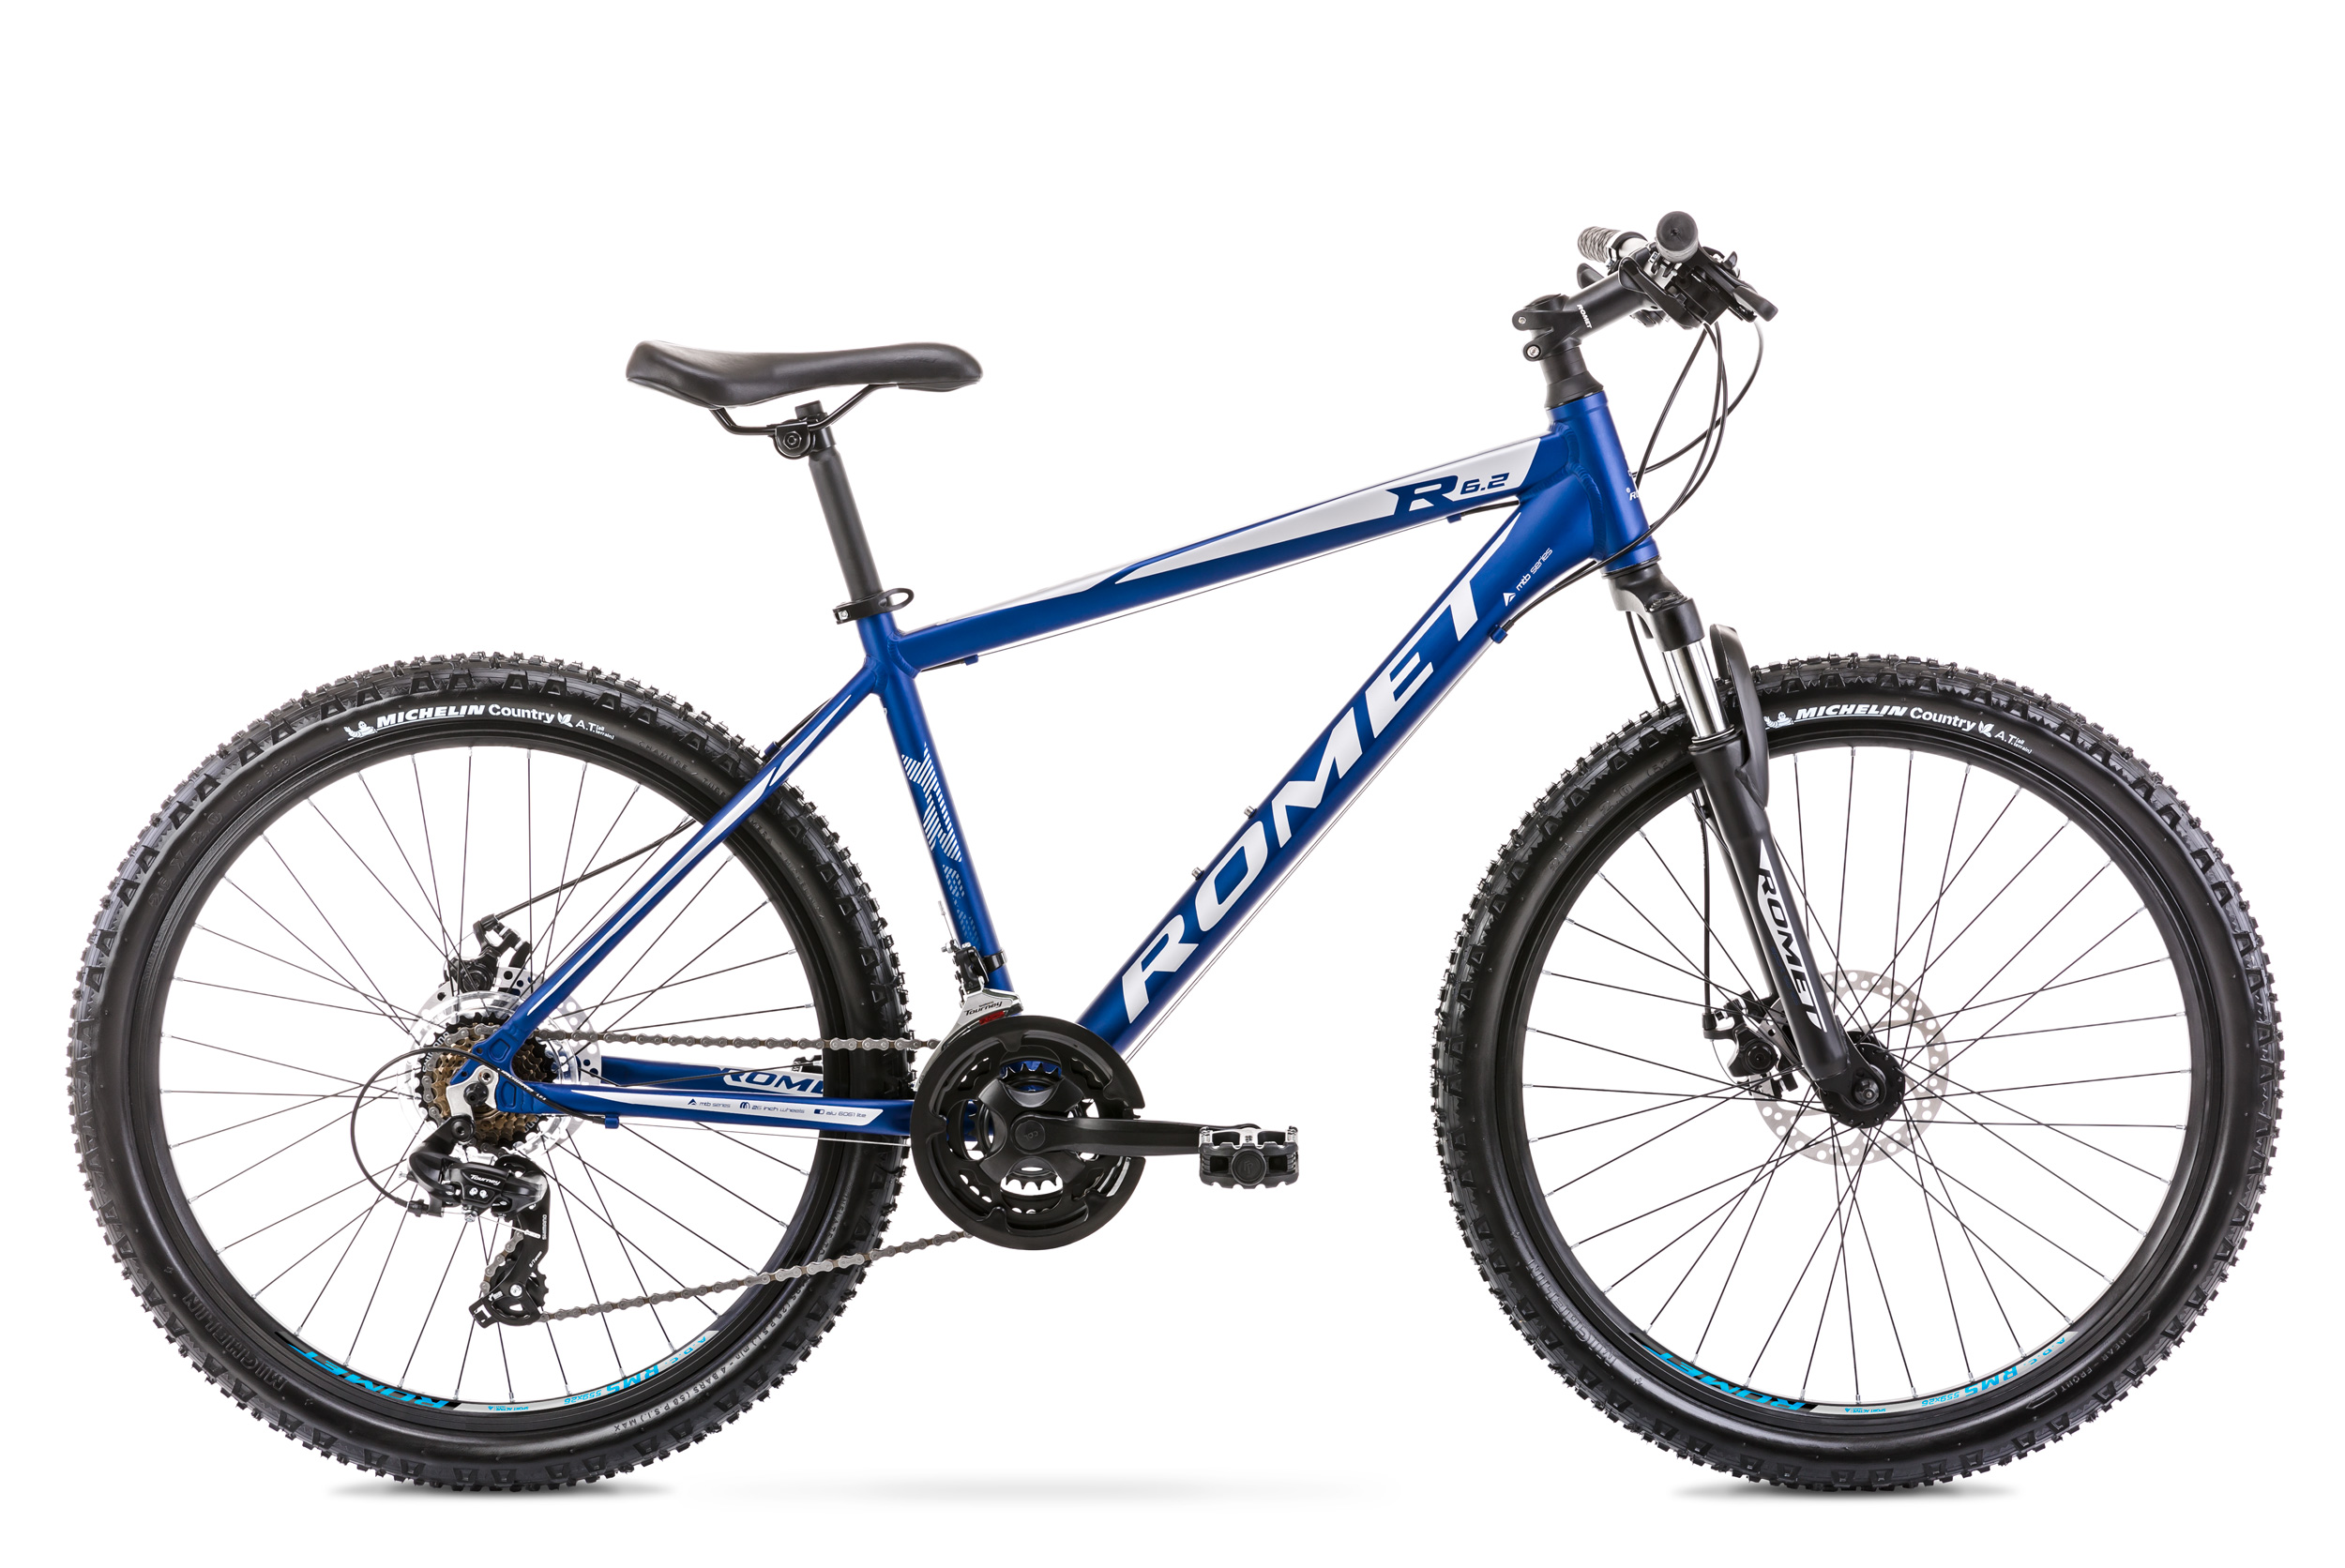 Bicicleta de munte pentru barbati Romet Rambler R6.2 Albastru 2020